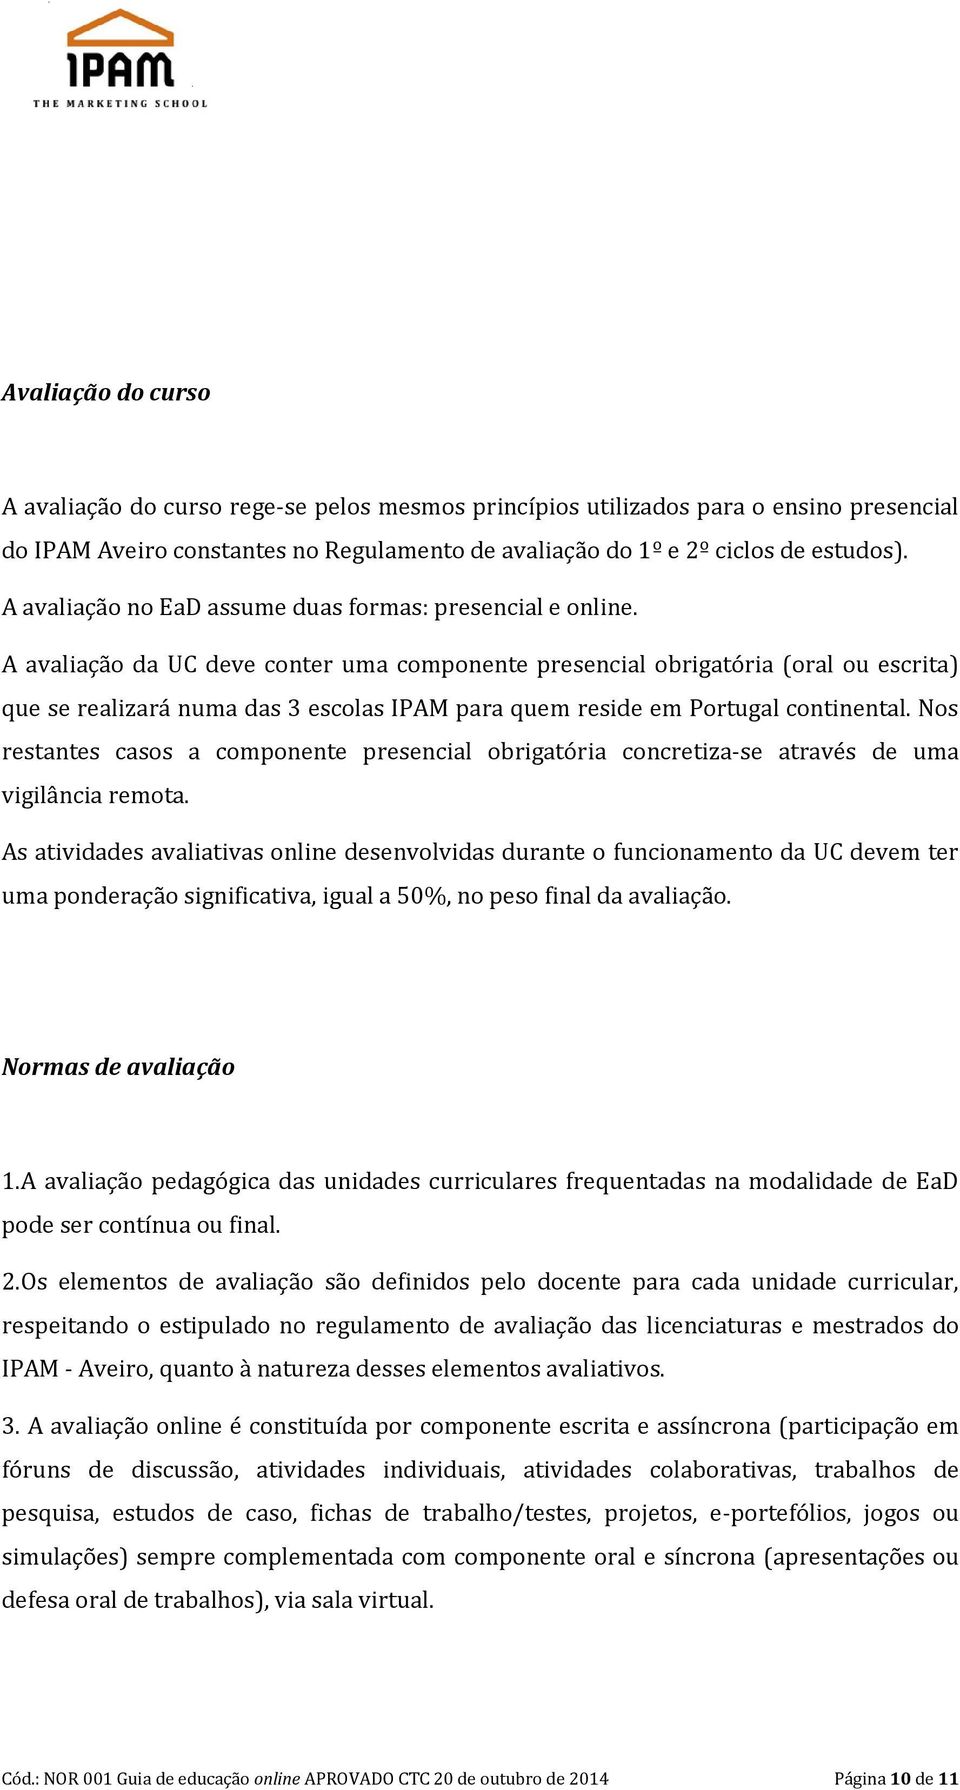 A avaliação da UC deve conter uma componente presencial obrigatória (oral ou escrita) que se realizará numa das 3 escolas IPAM para quem reside em Portugal continental.